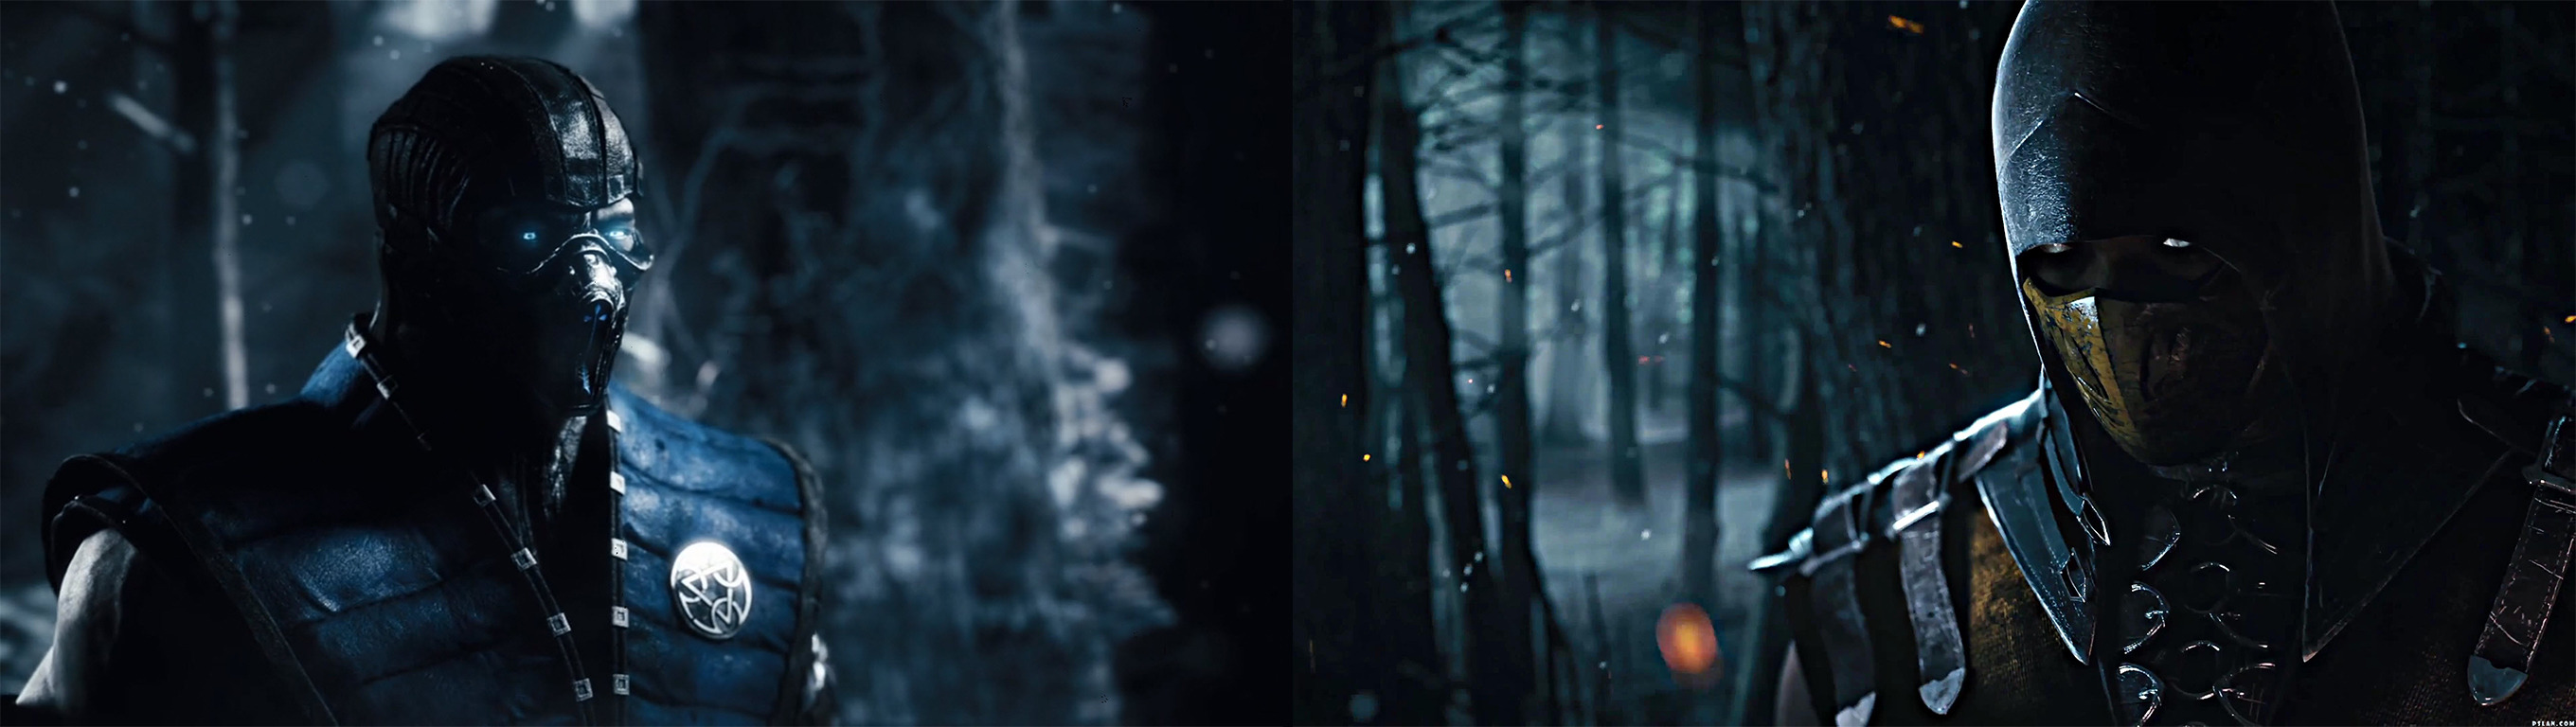 fondos de pantalla para dos,oscuridad,bosque,árbol,ficción,personaje de ficción